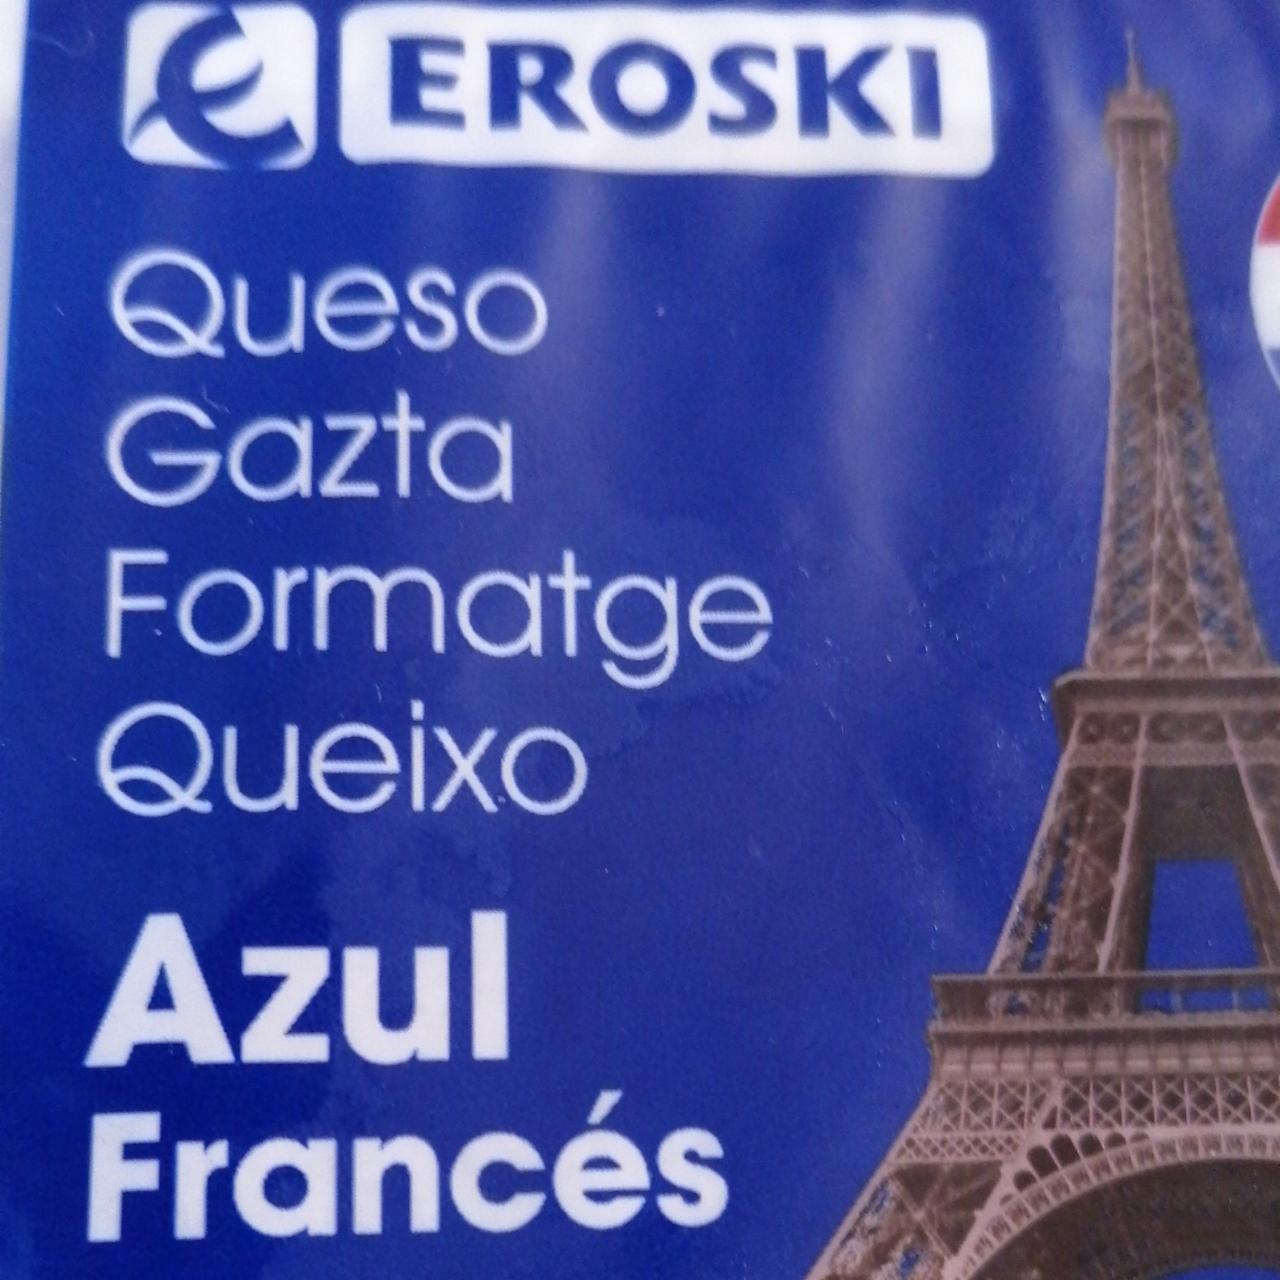 Fotografie - Queso Azul Francés Eroski